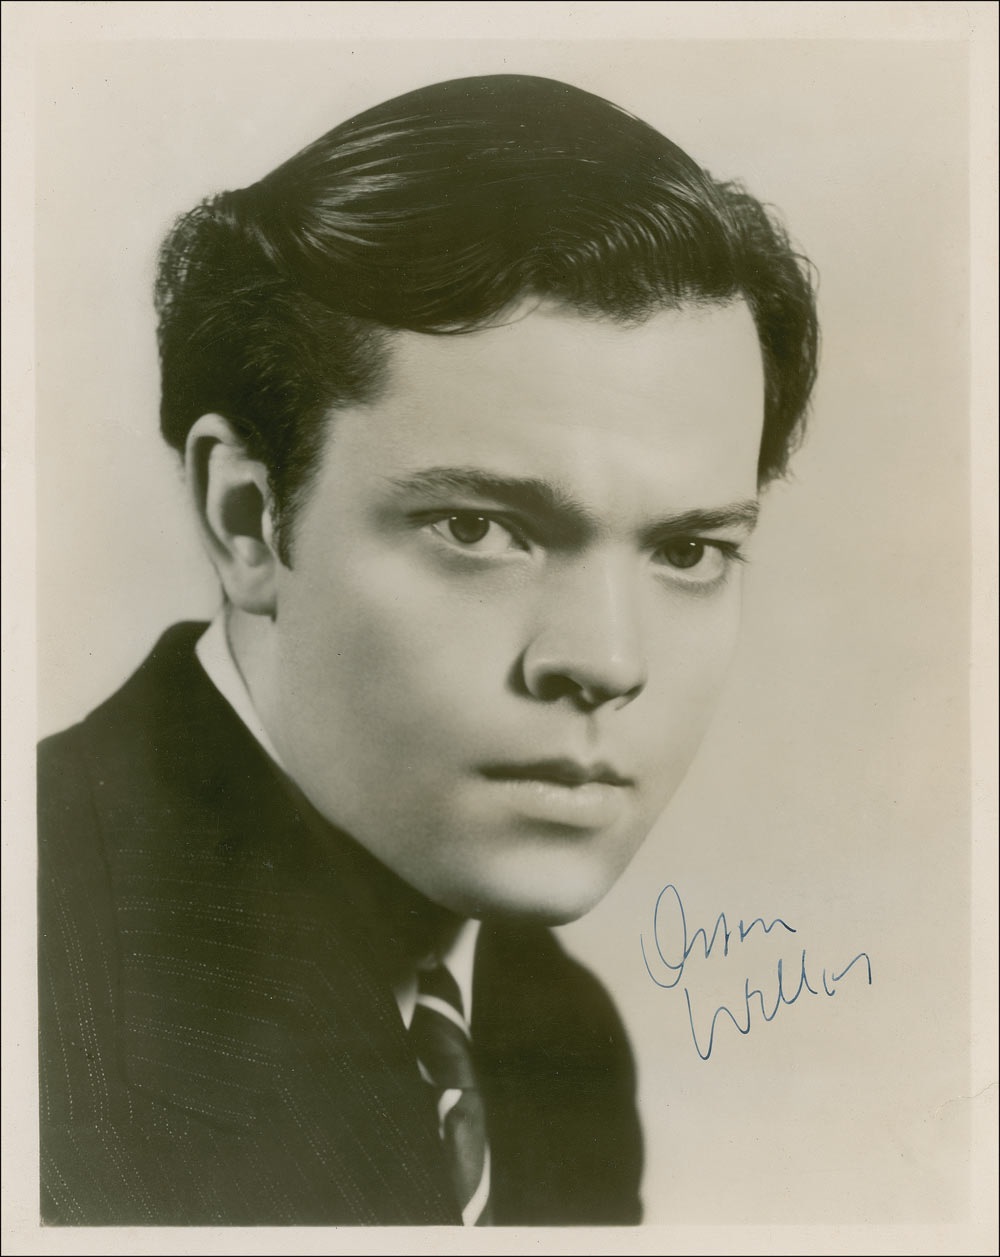 Lot #1431 Orson Welles